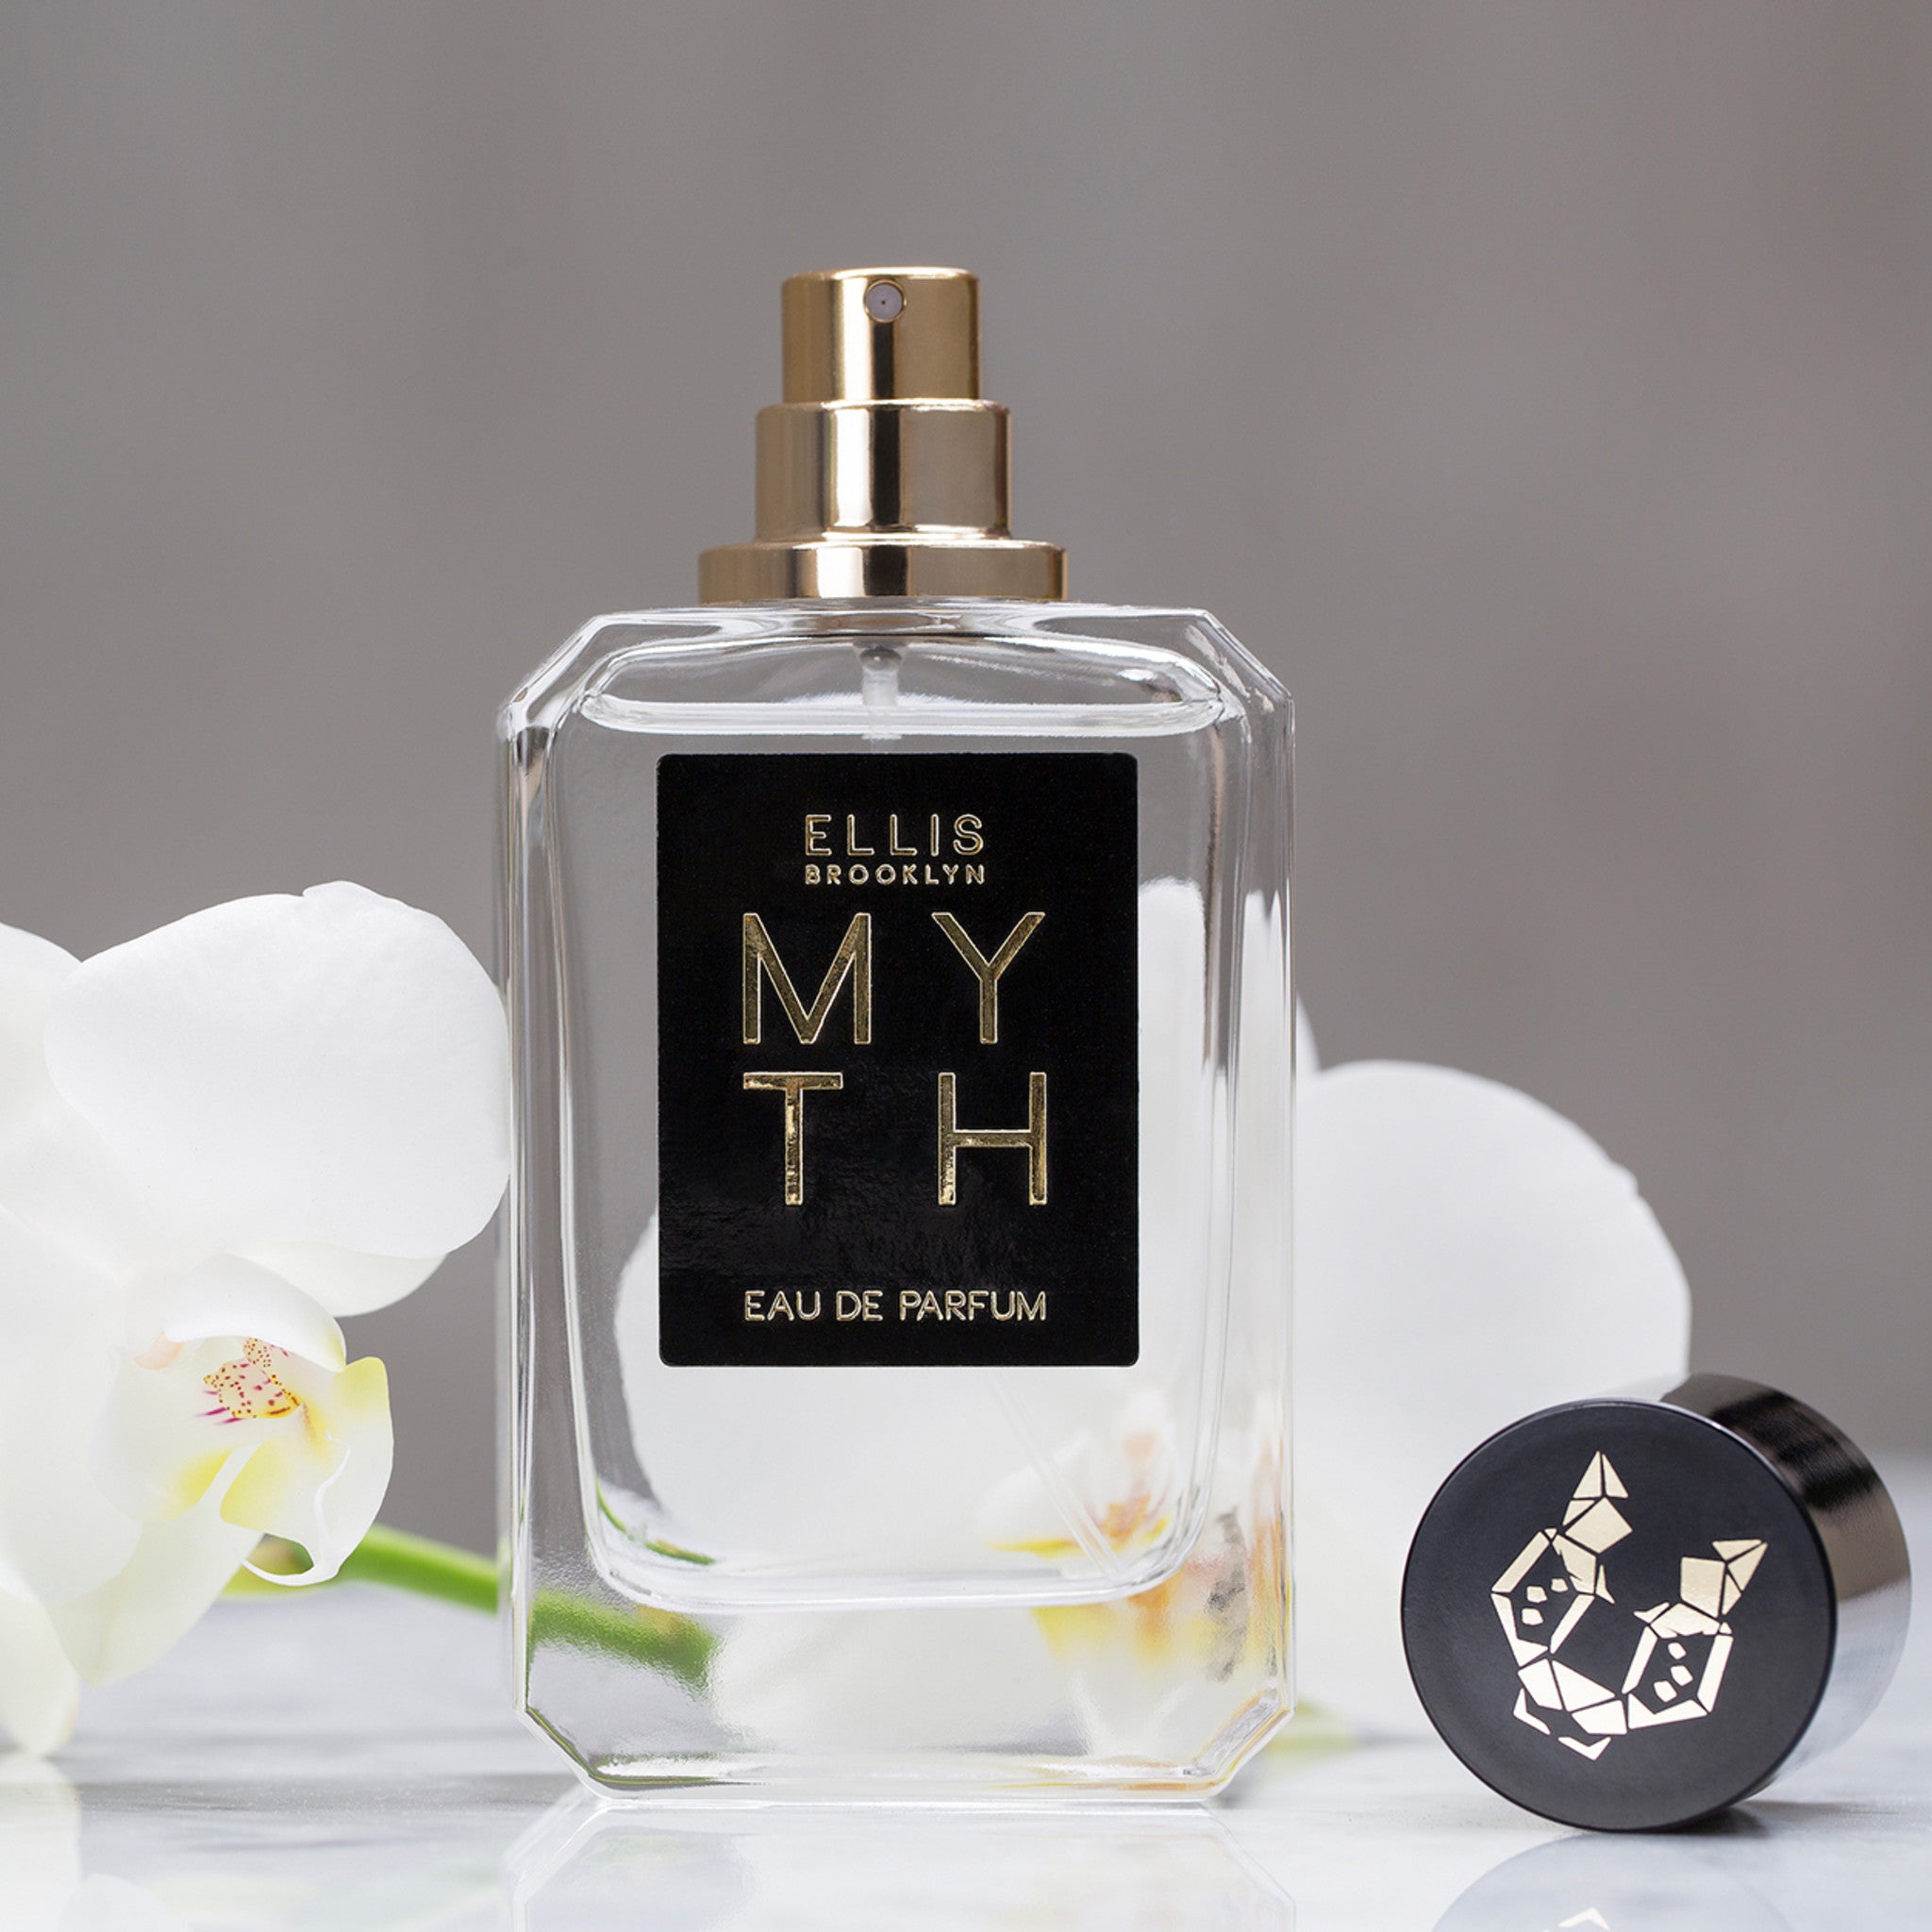 Myth Eau de Parfum